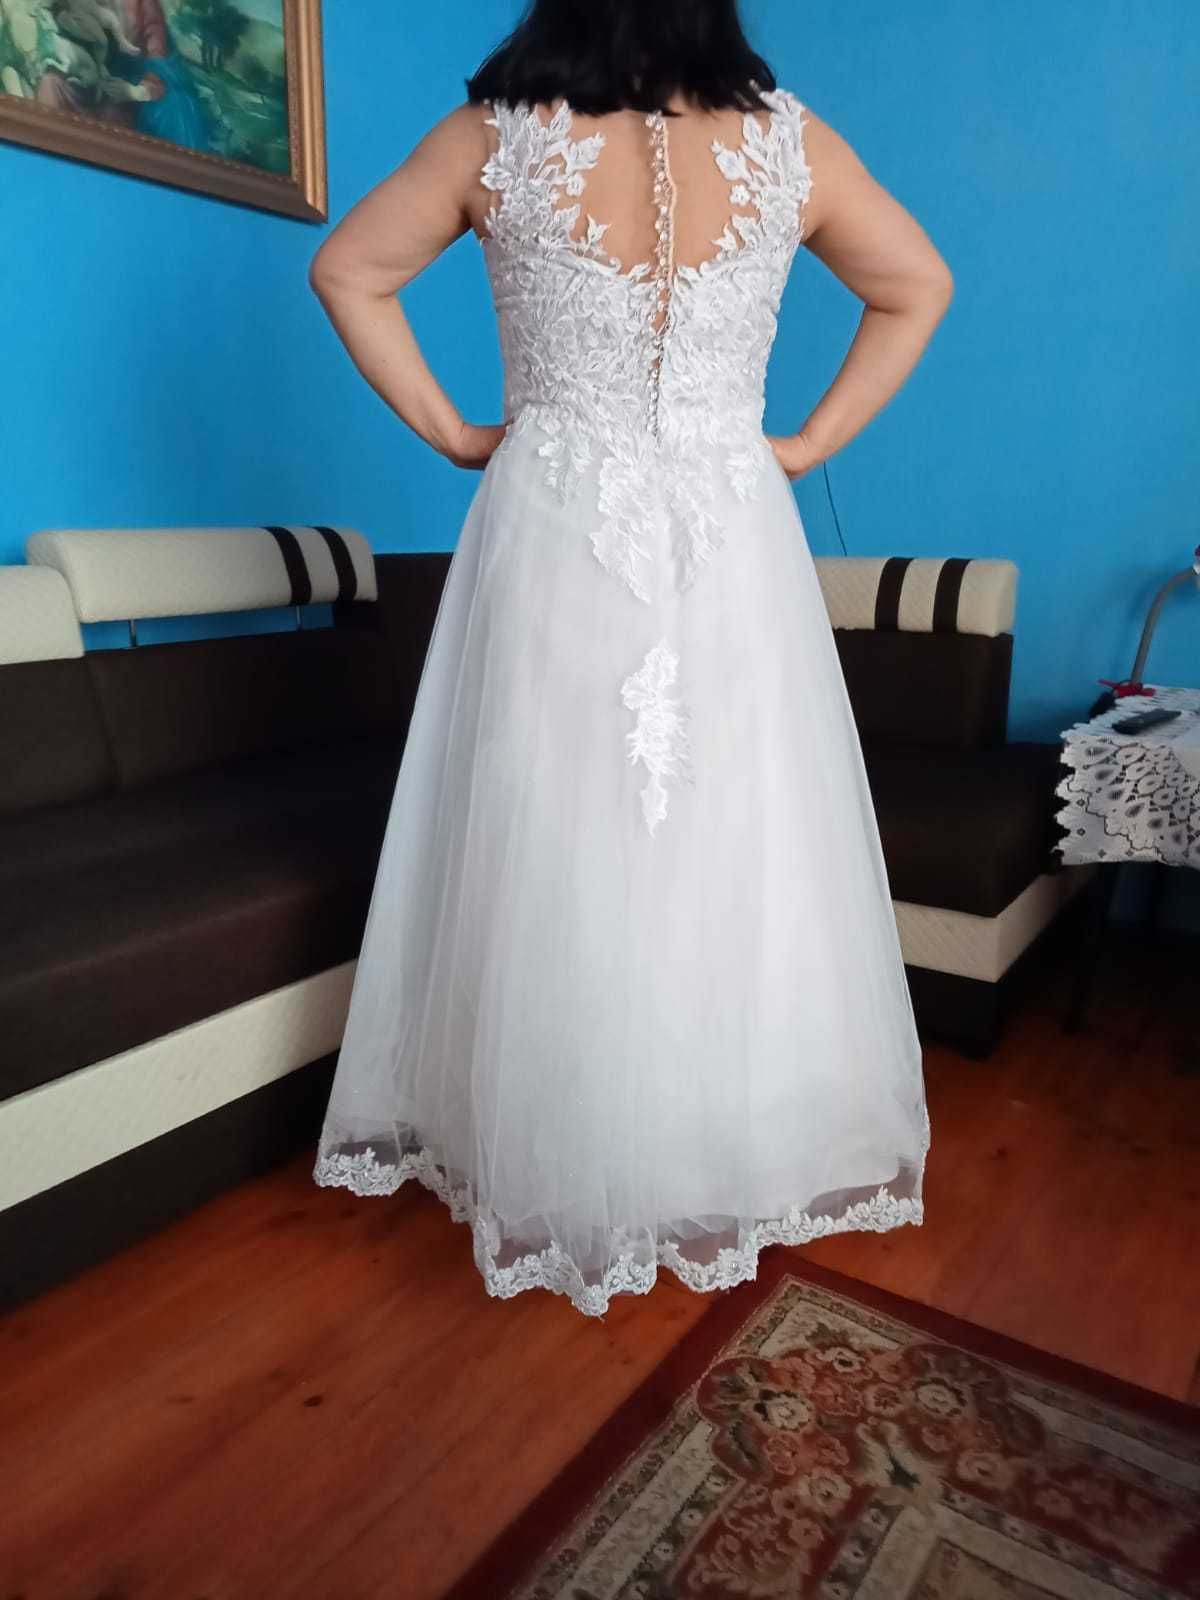 Piękna suknia ślubna.